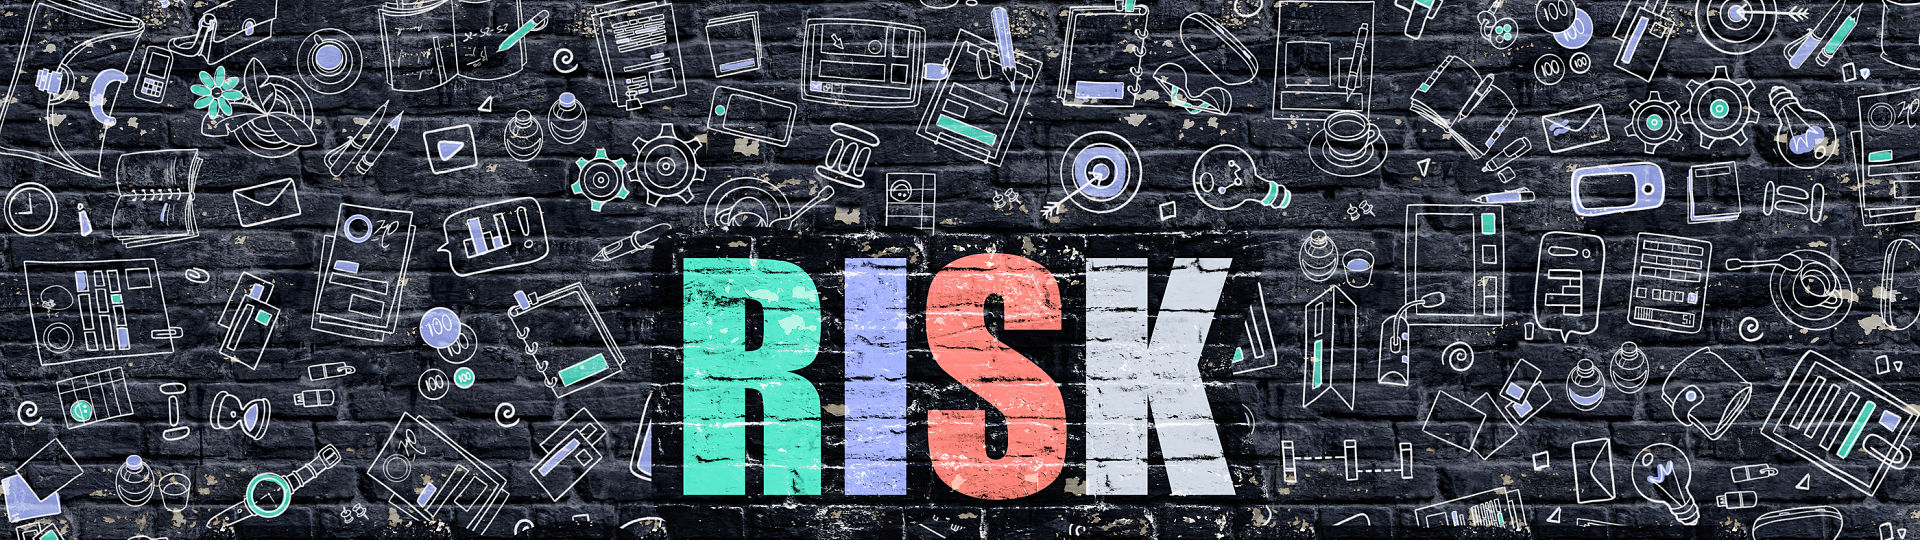 Análisis de riesgos para 2009/ Informe Global Risks 2009